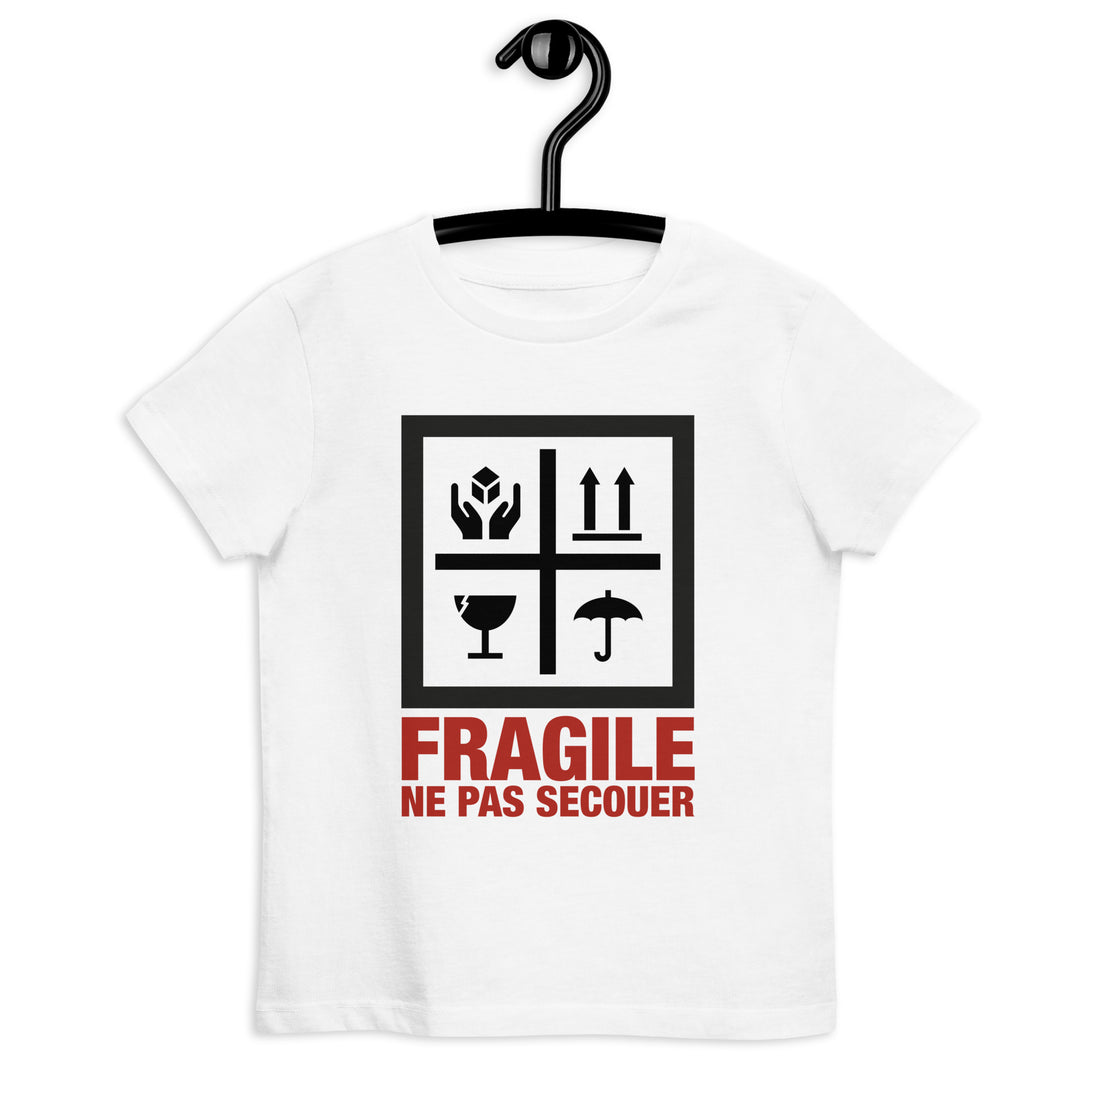 Fragile - T-shirt en coton bio - Enfant